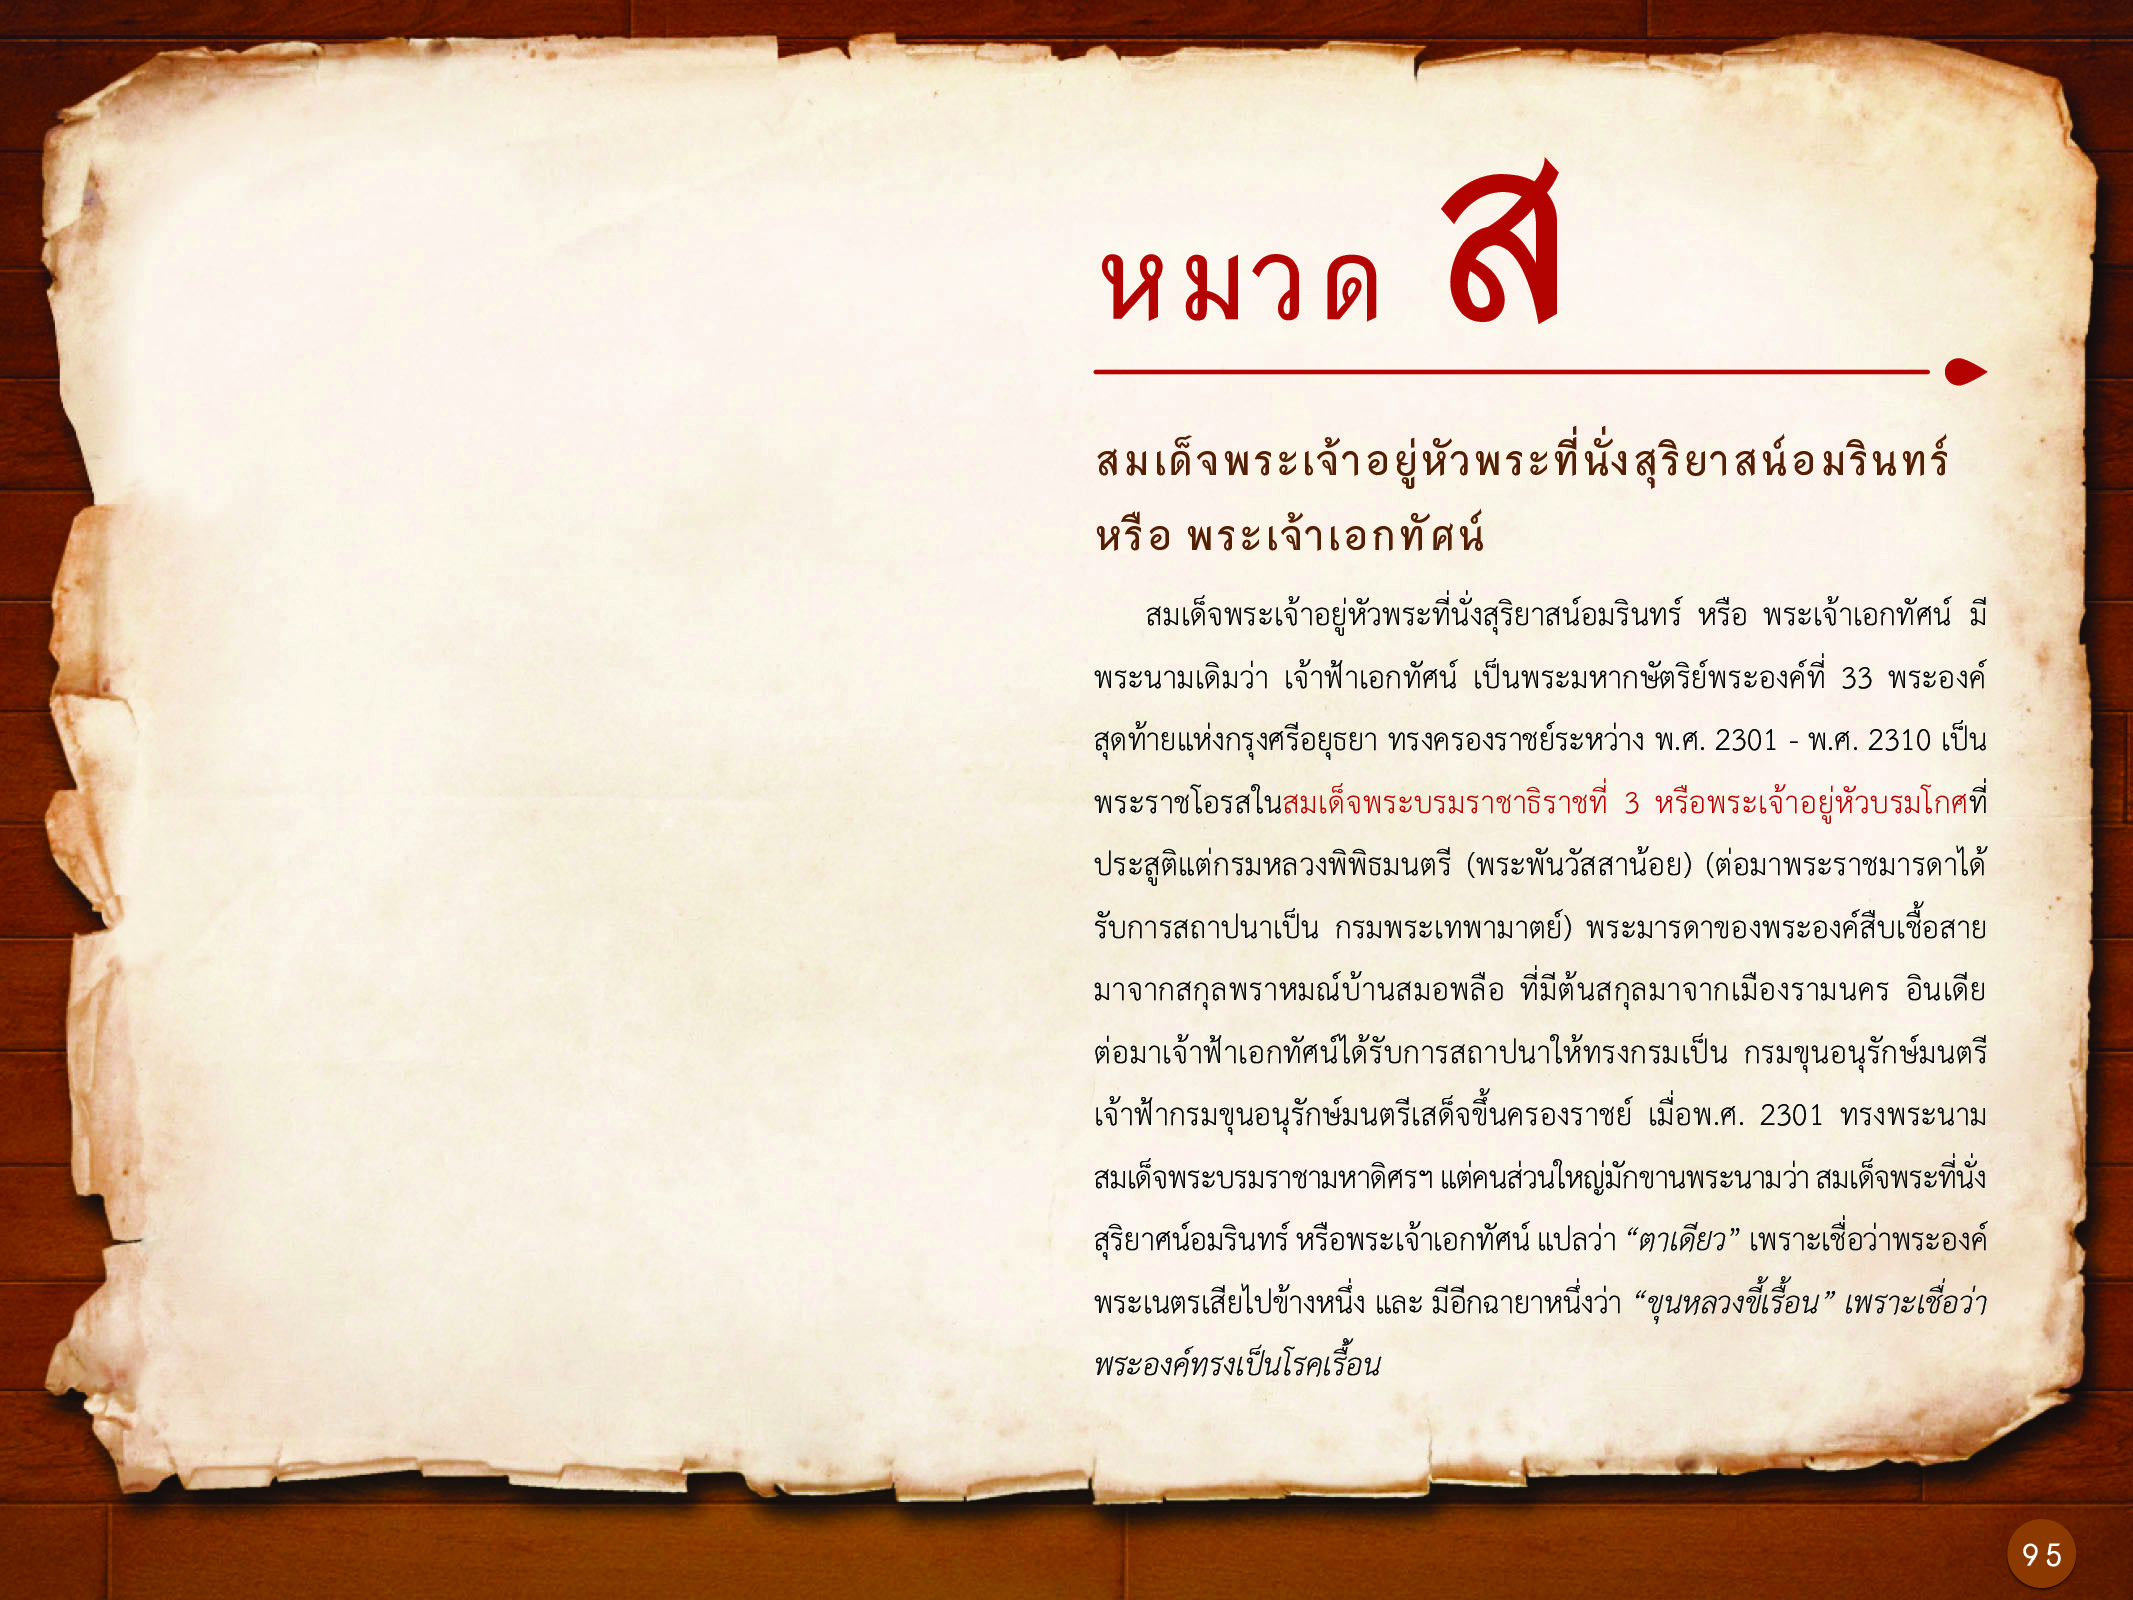 ประวัติศาสตร์กรุงธนบุรี ./images/history_dhonburi/95.jpg